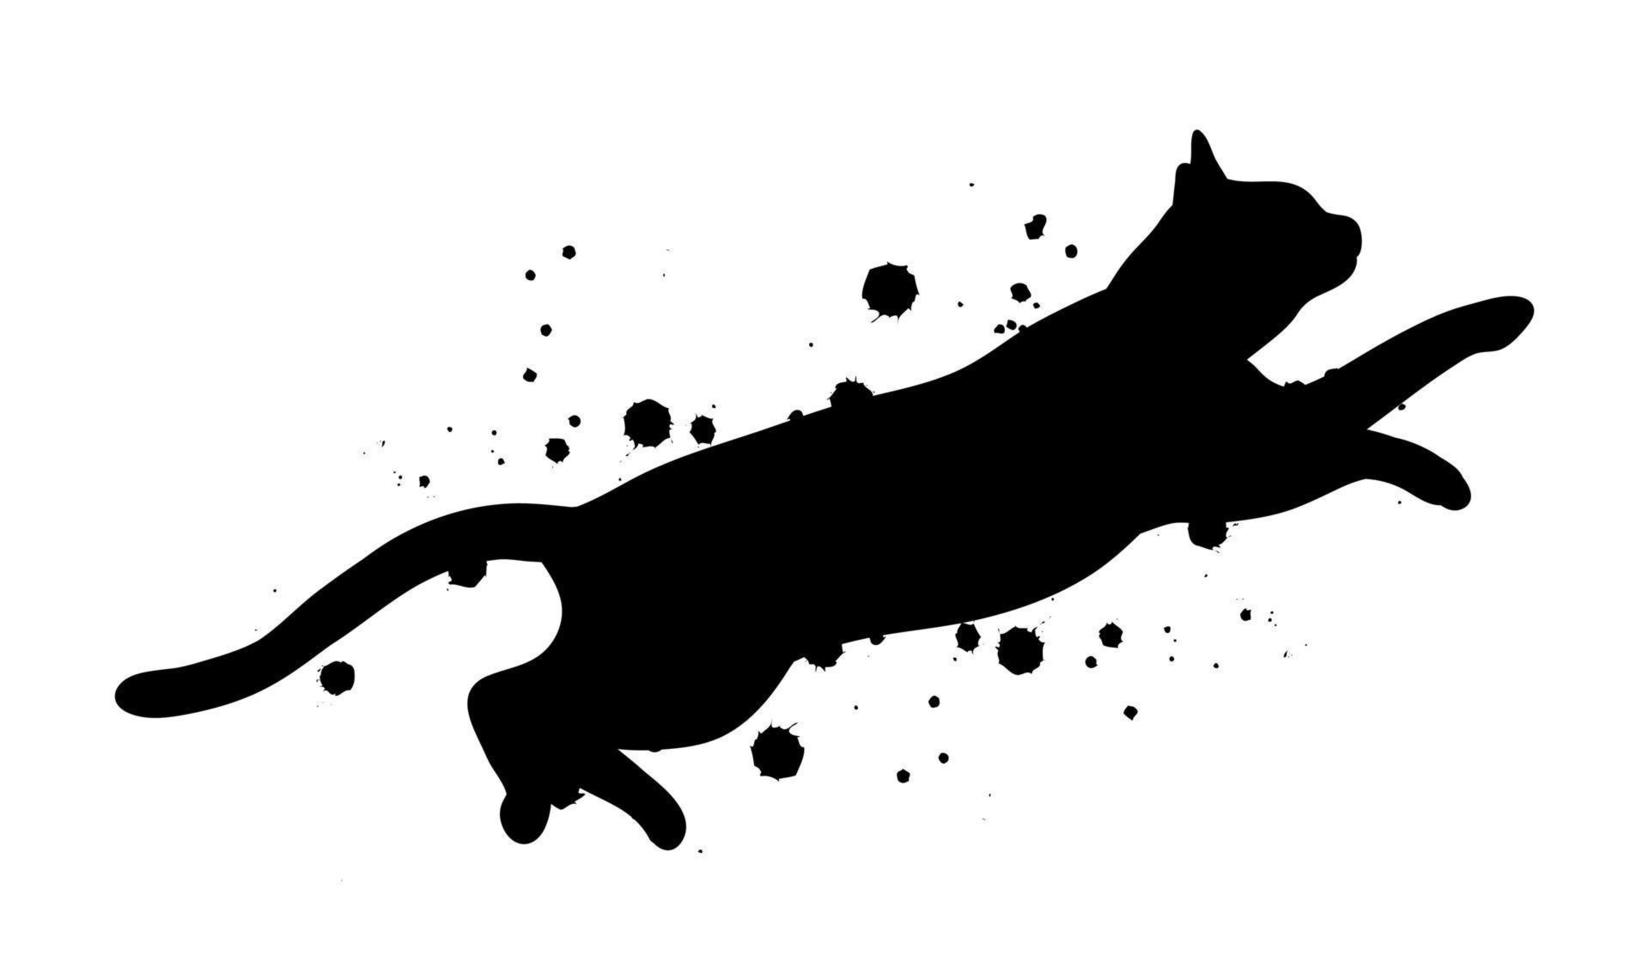 springende schwarze katzenschattenbild mit abstrakter illustration des tintenspritzers. vektor